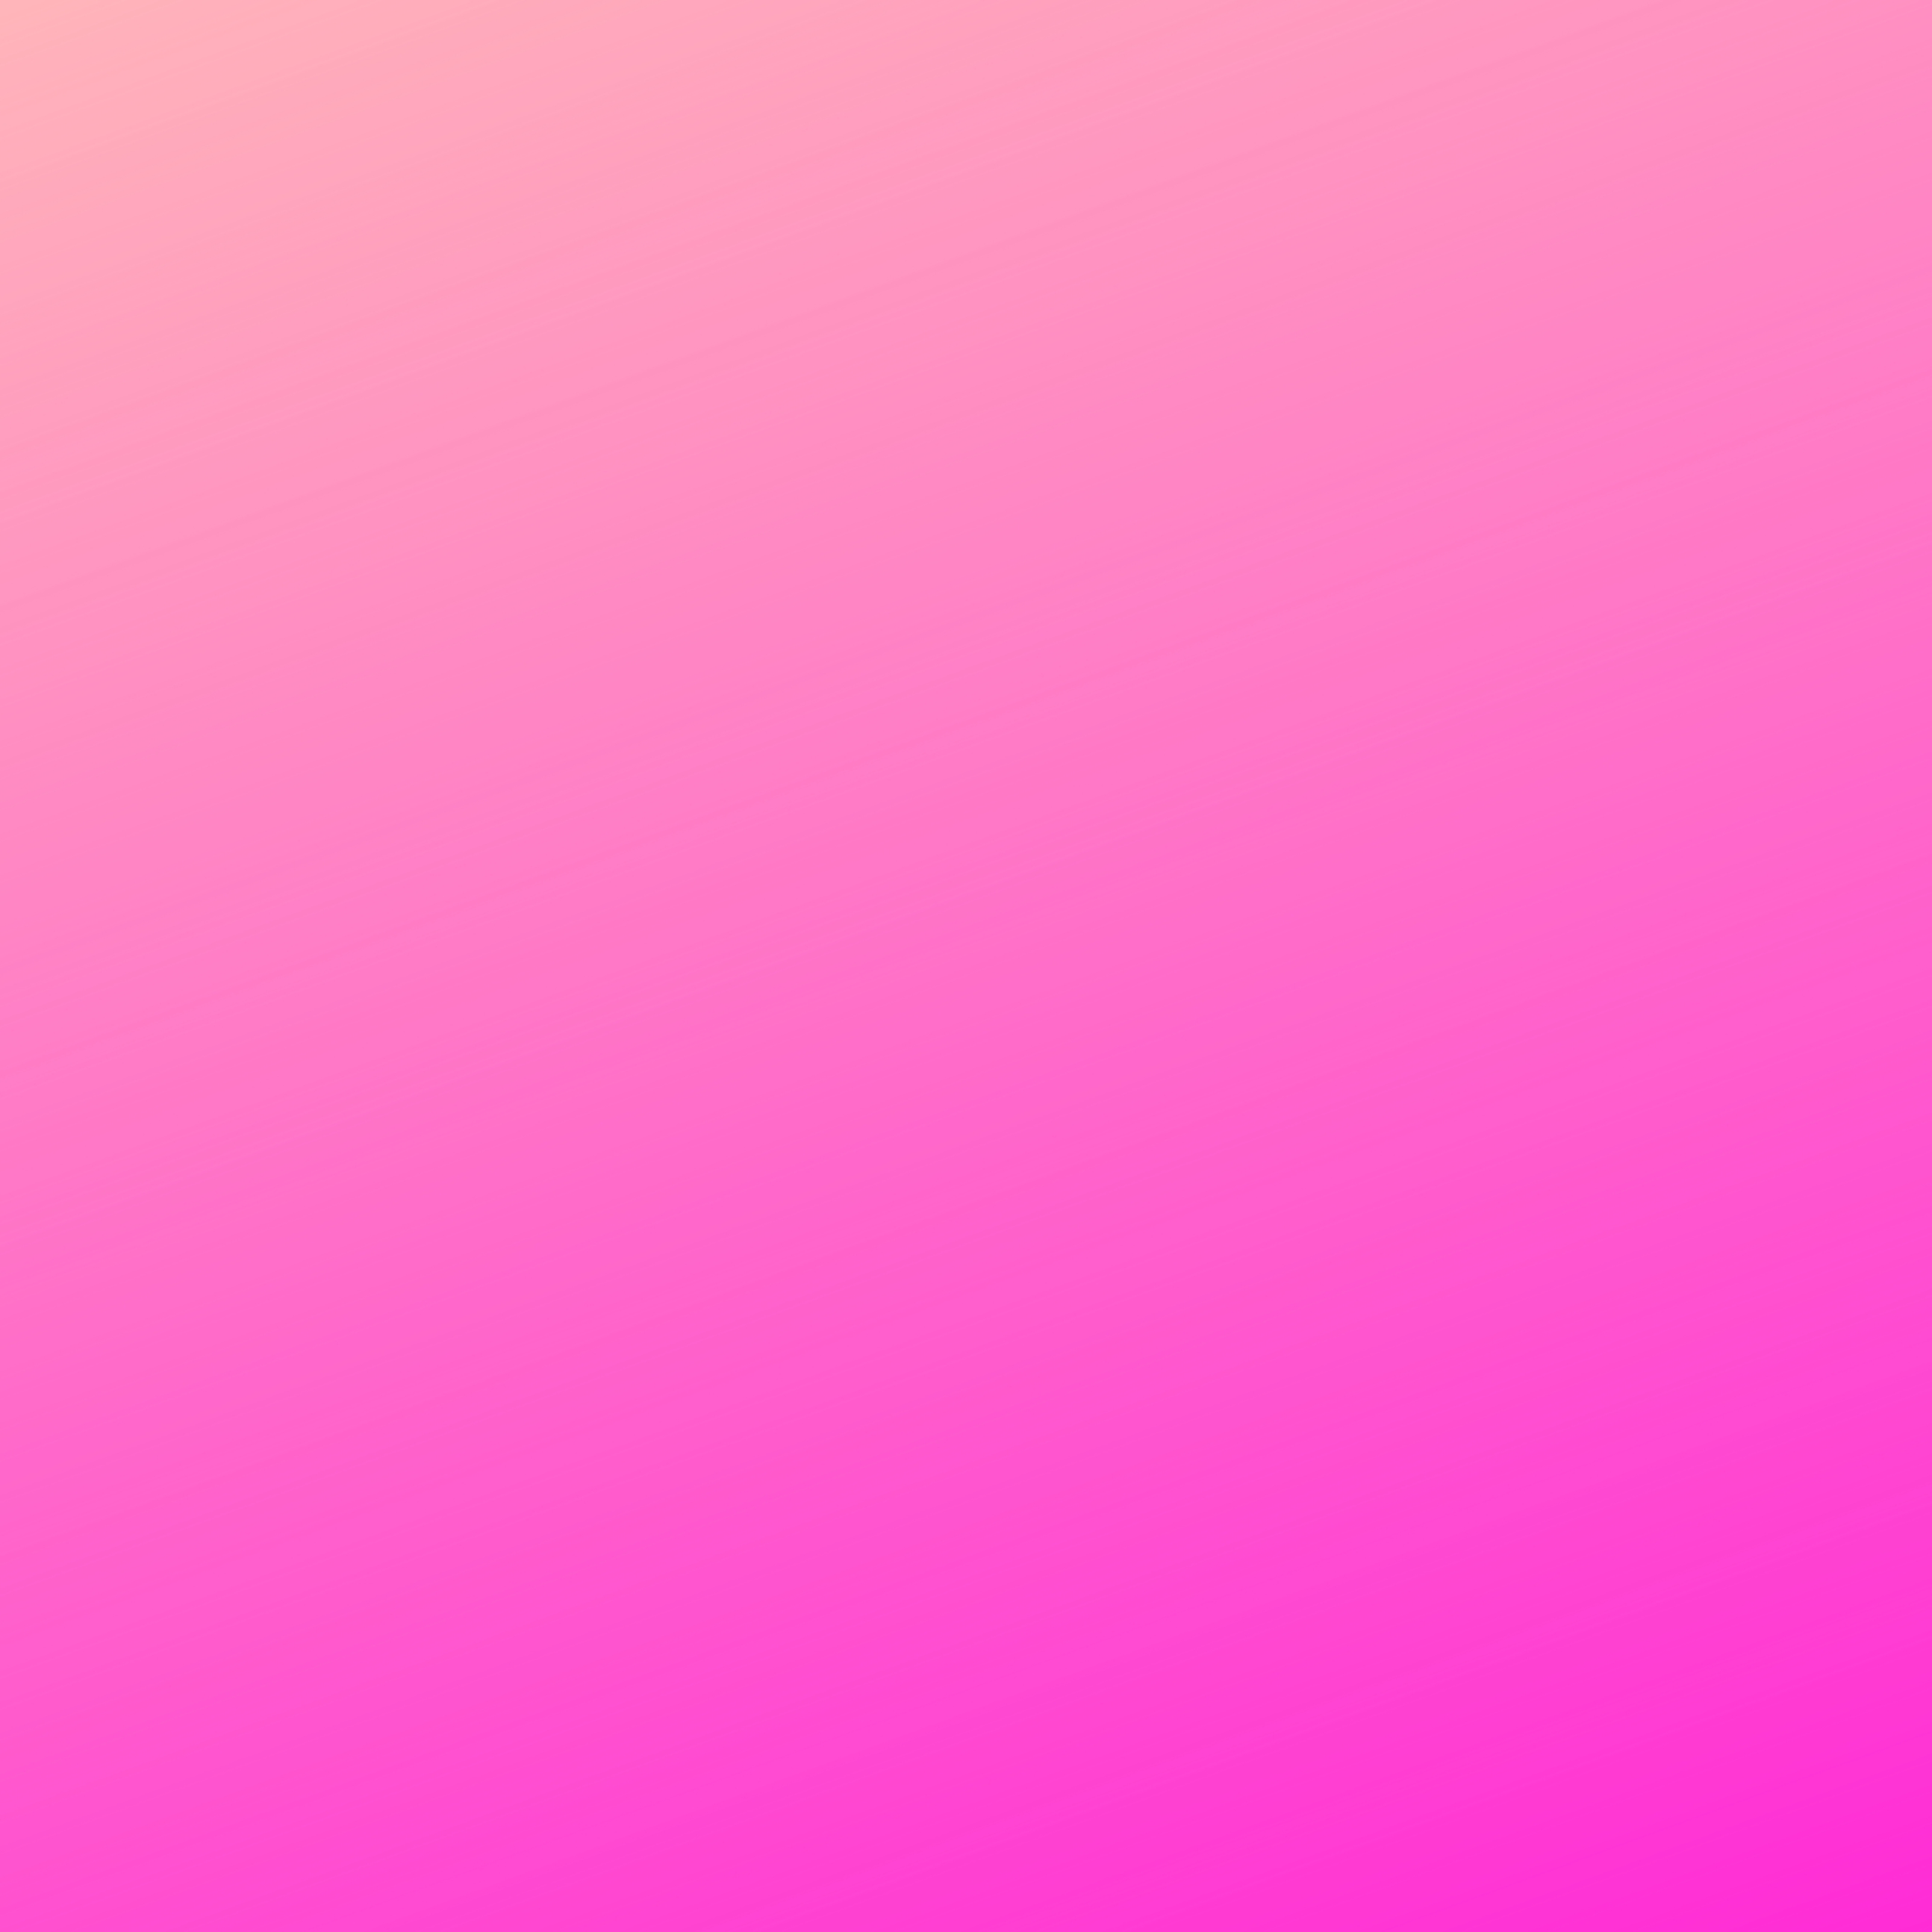 Pink Gradient Background iPad Wallpaper